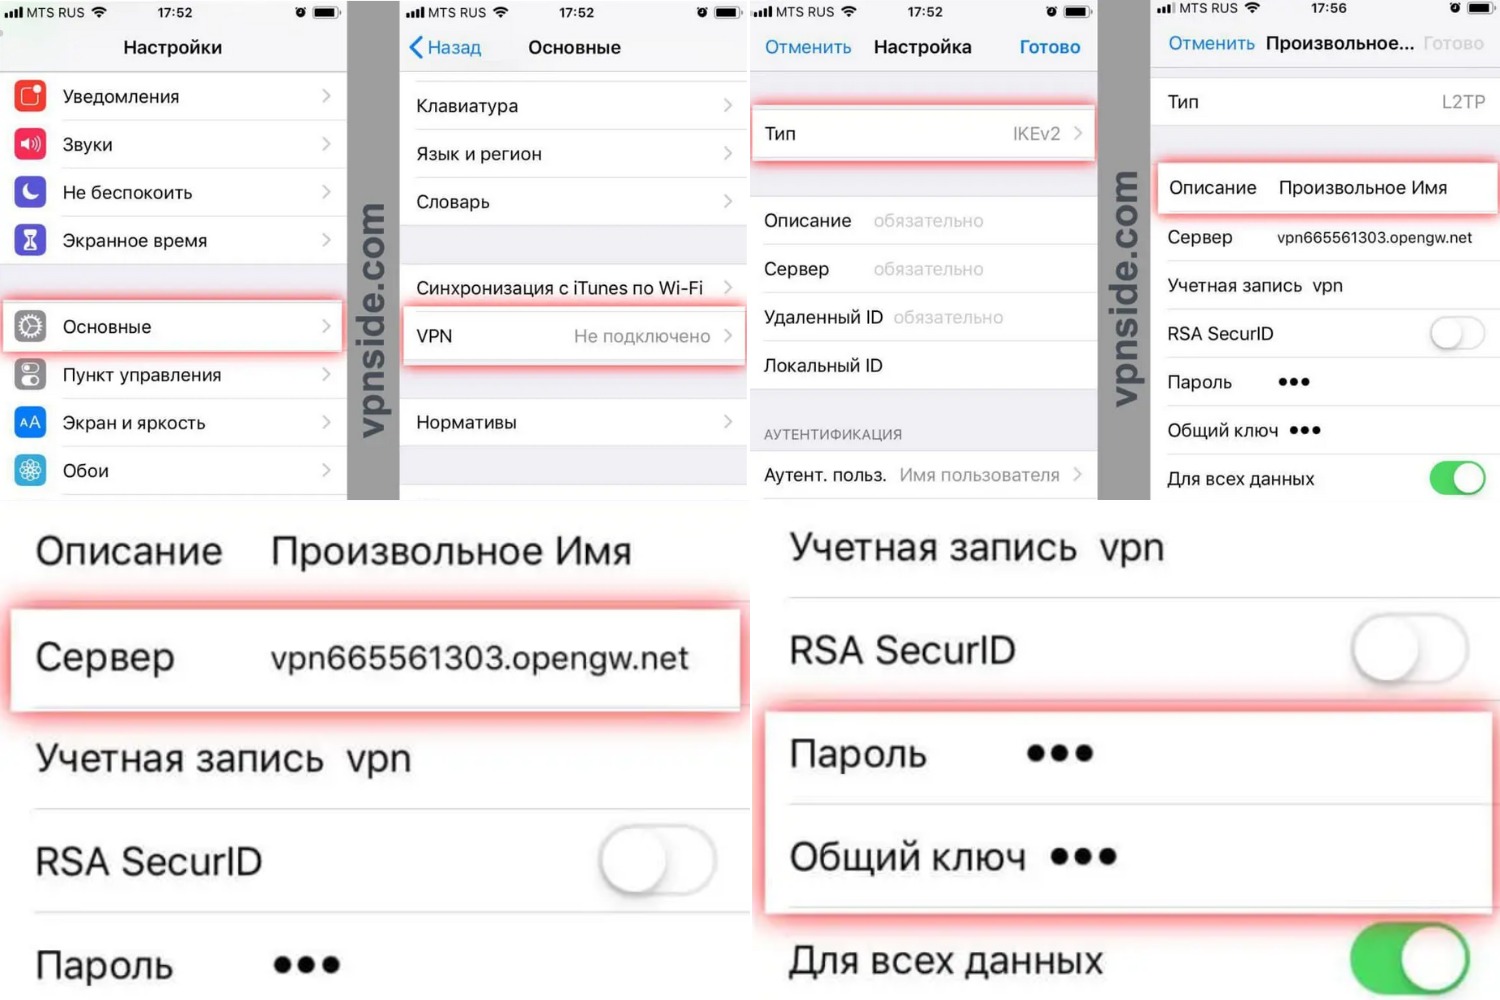 Как настроить телеграмм на русский язык в айфоне фото 100